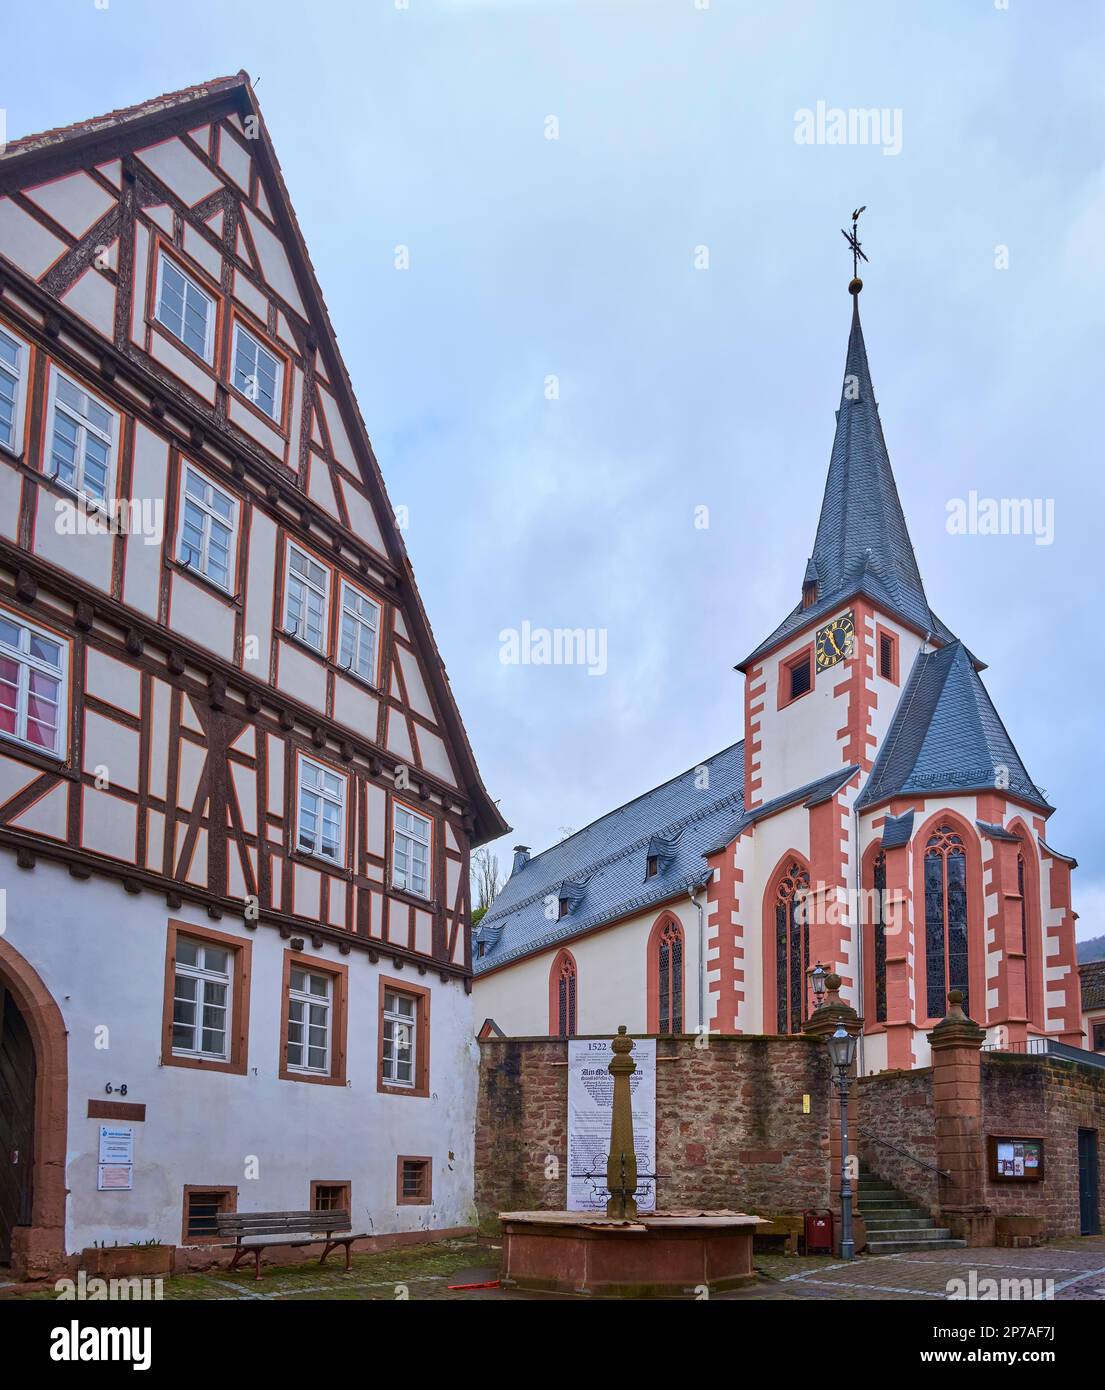 La Chiesa evangelica di Neckarsteinach è un edificio sacrale tardo gotico situato nella città di Neckarsteinach, città dei quattro castelli, Assia, Germania. Foto Stock